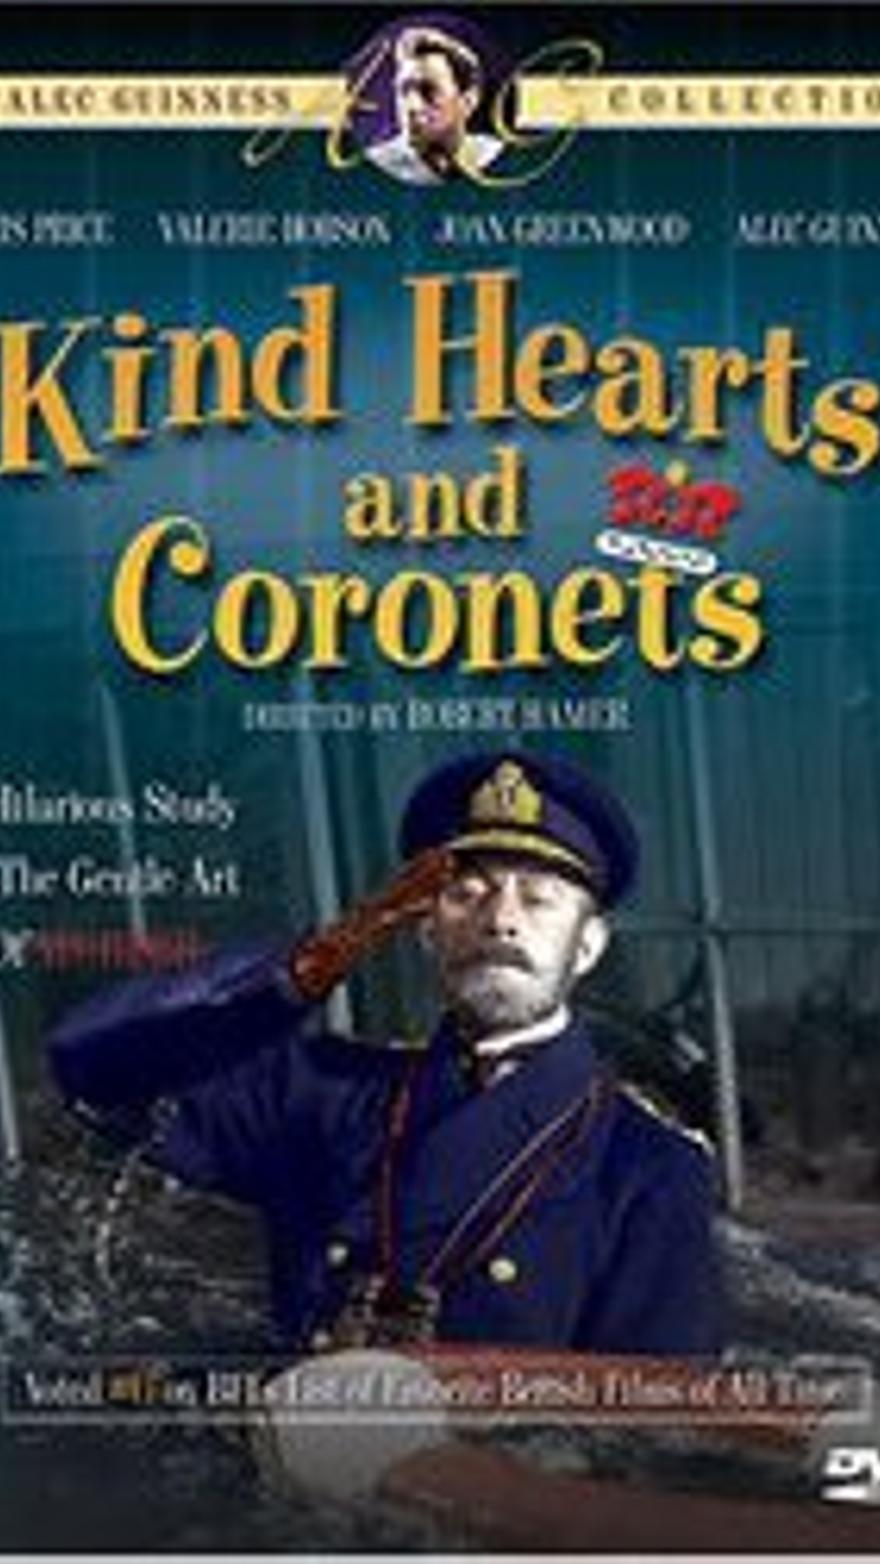 Kind hearts and coronets